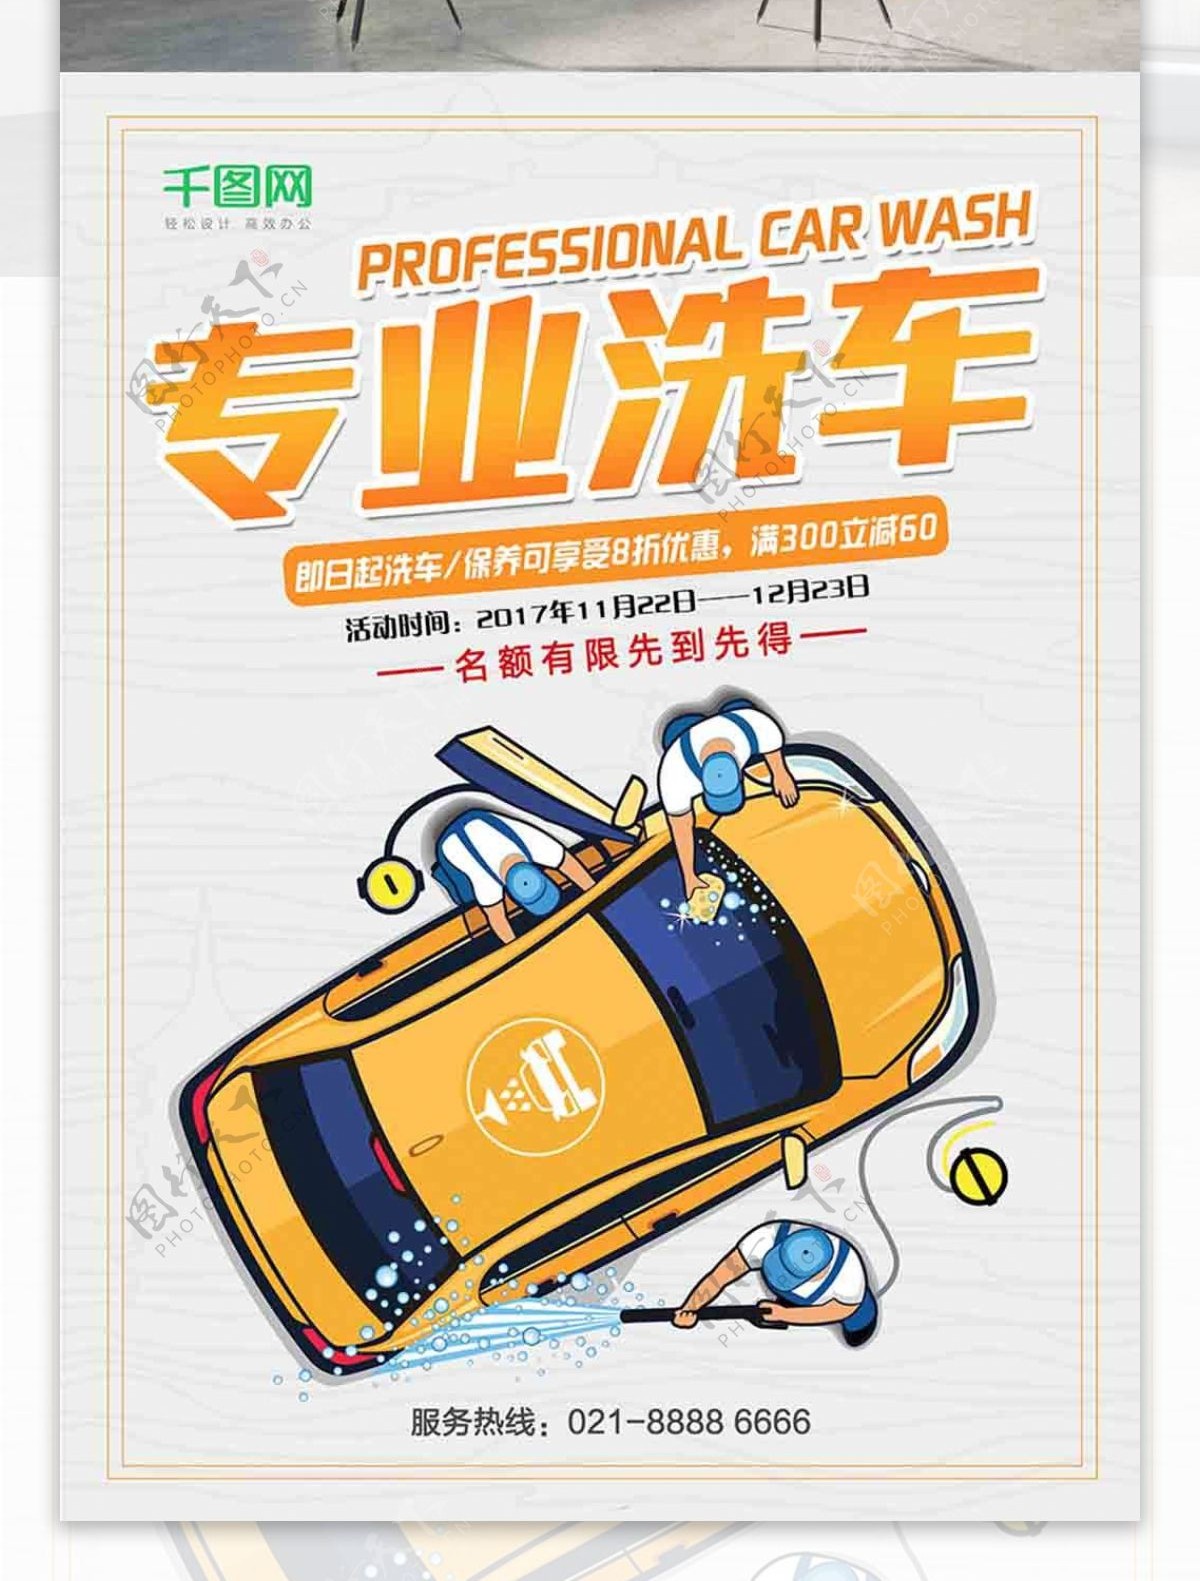 简约大气专业洗车车行宣传海报设计